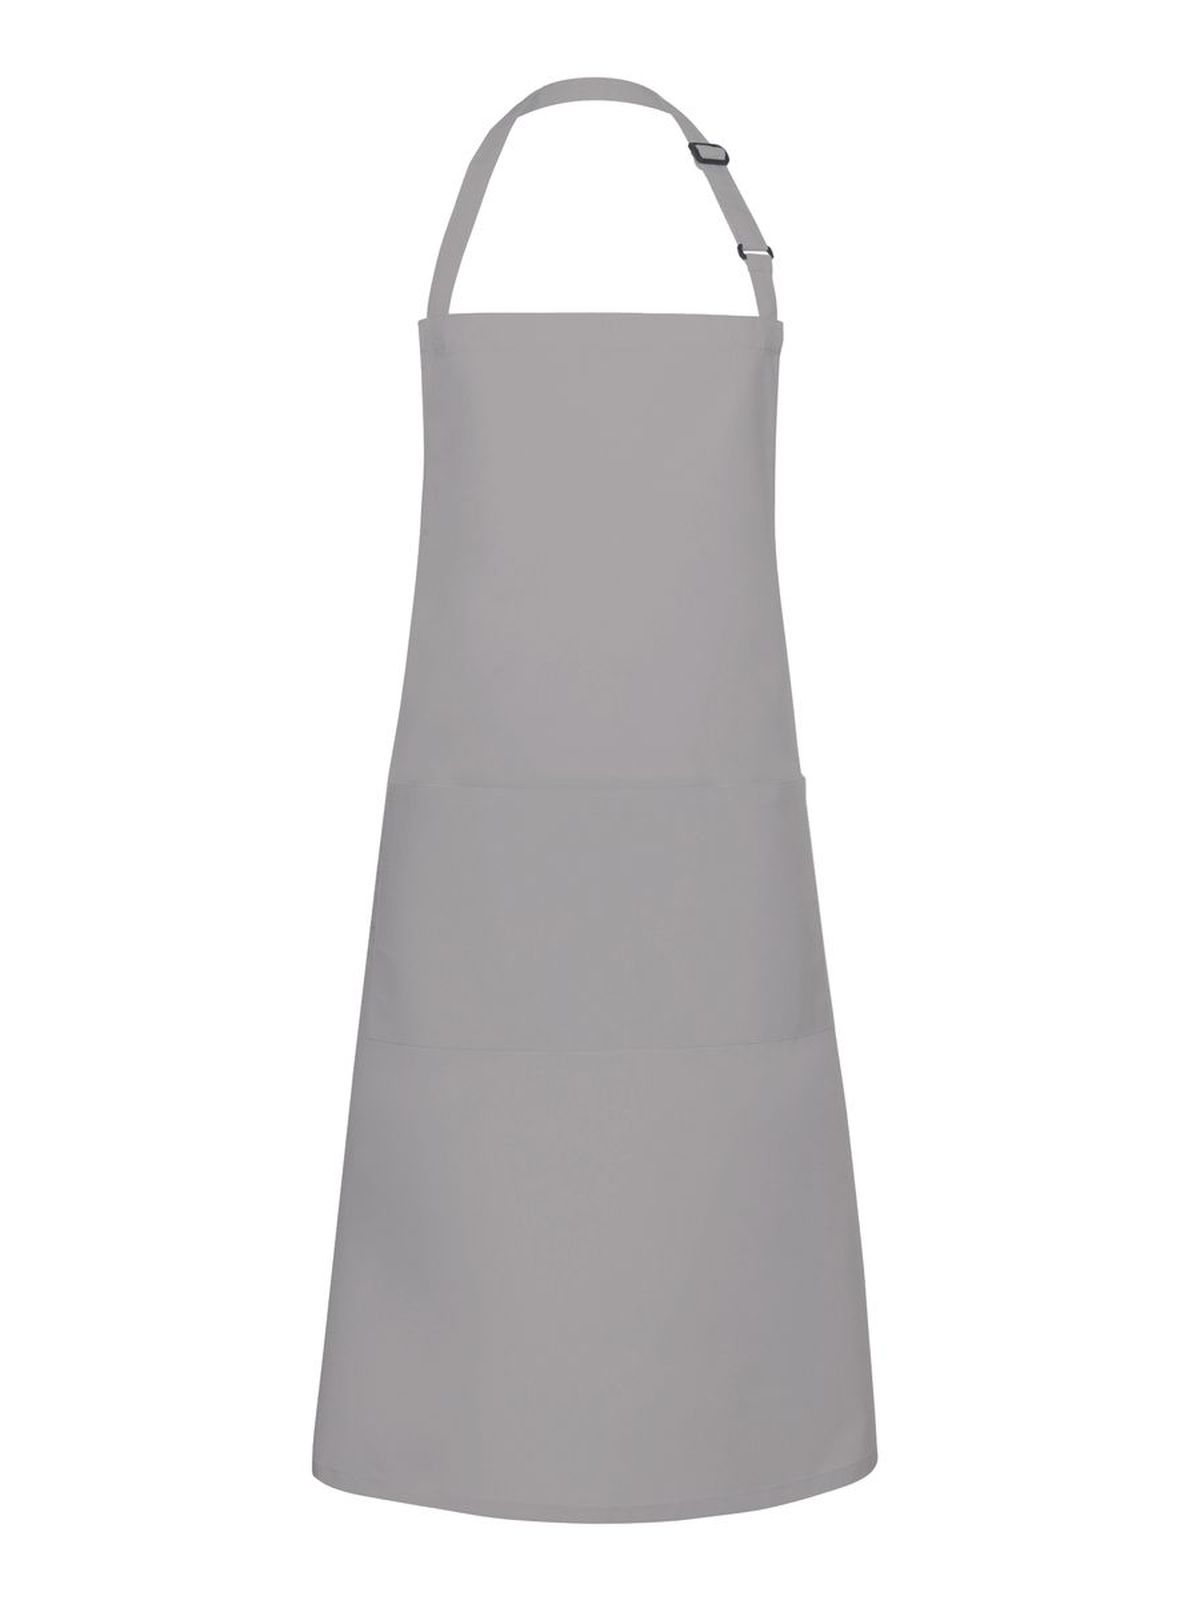 bistro-apron-basic-with-buckle-and-pocket-basalt-grey.webp